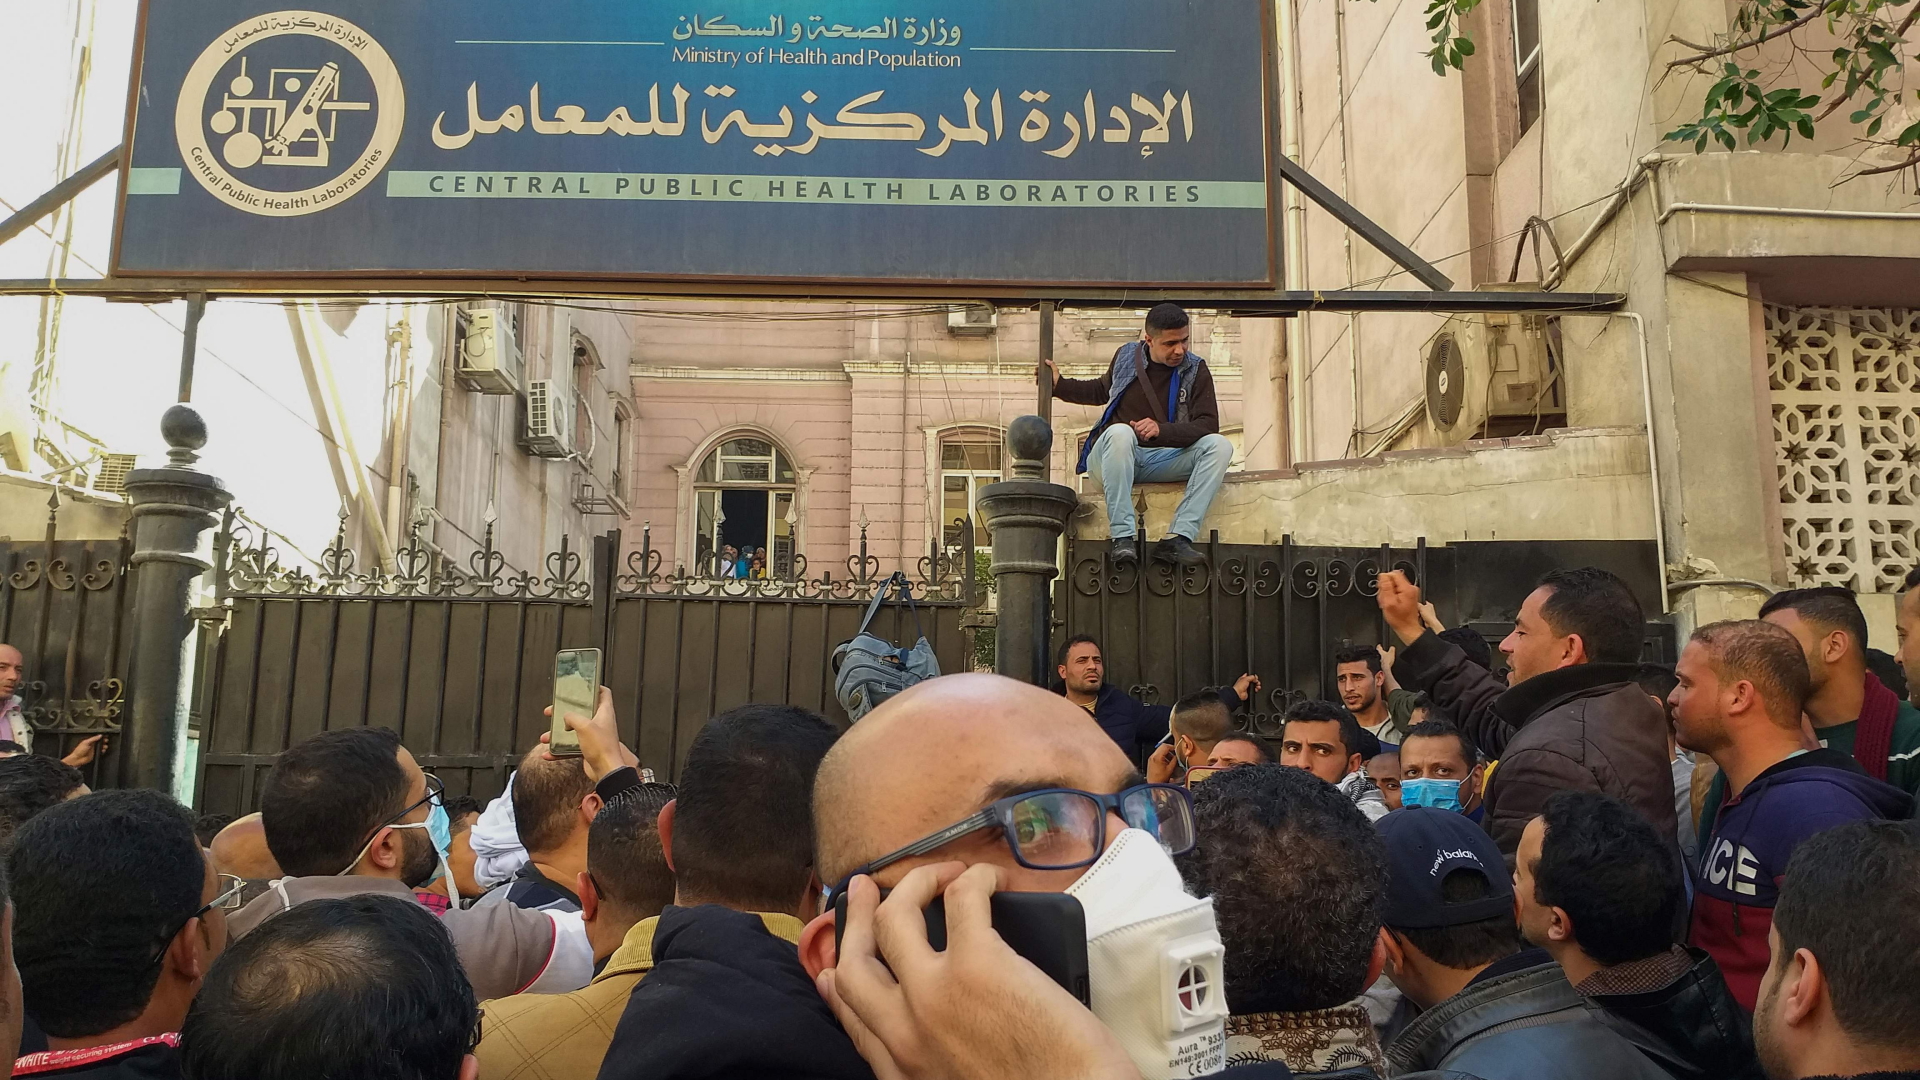 In Kairo drängen sich Menschen vor dem Labor für öffentliche Gesundheit, um sich auf eine Coronainfektion testen zu lassen. | AFP